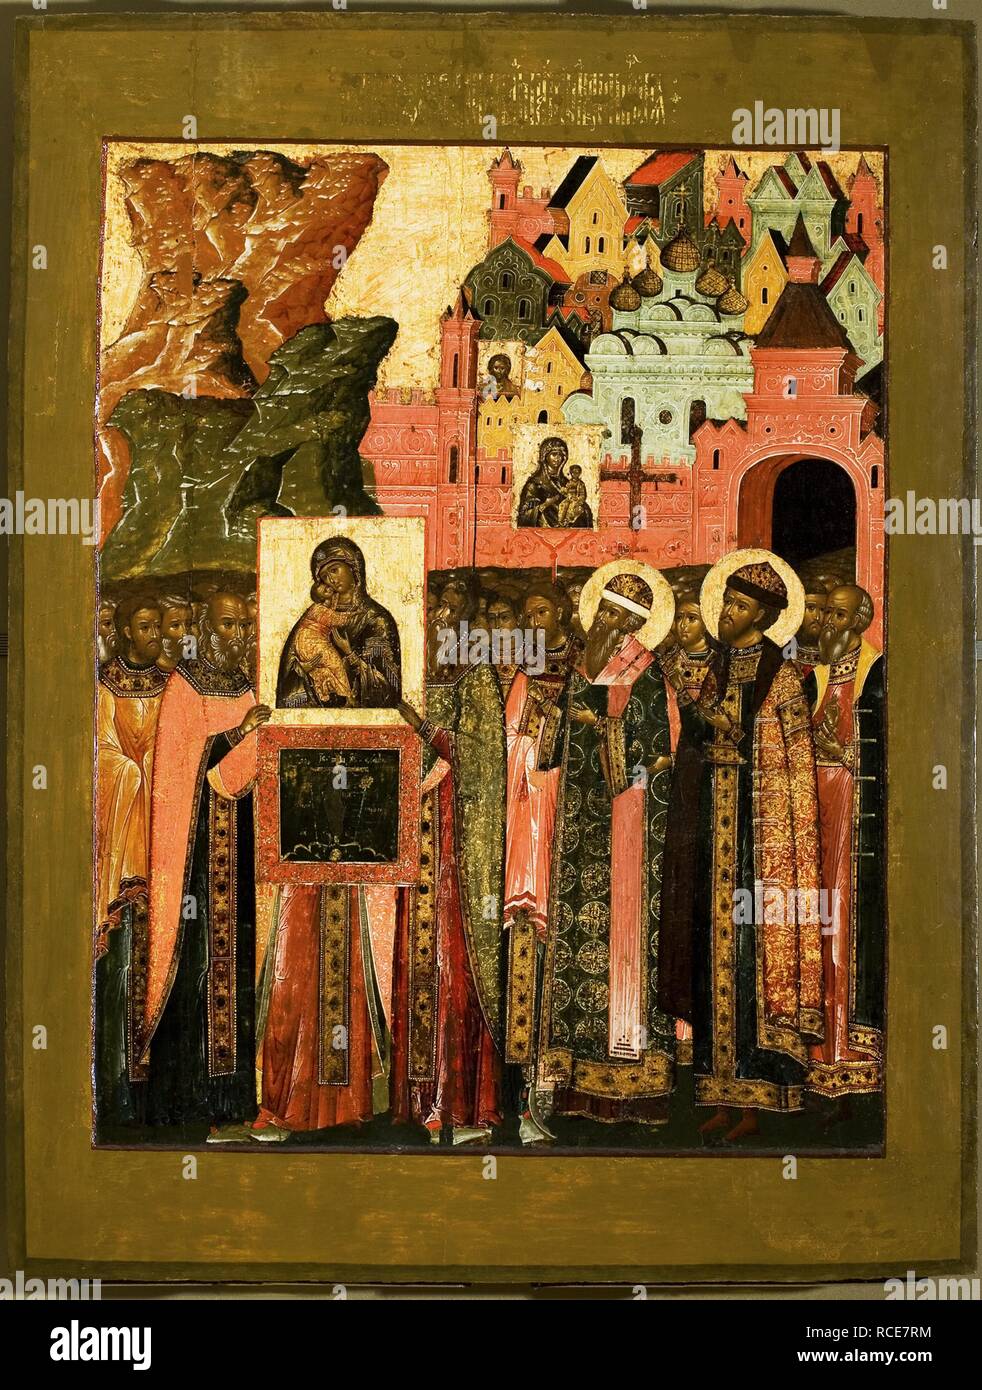 Arrivo dell'icona della Madonna di Vladimir a Mosca nel 1395. Museo: Membro Galleria Tretyakov di Mosca. Autore: icona russa. Foto Stock